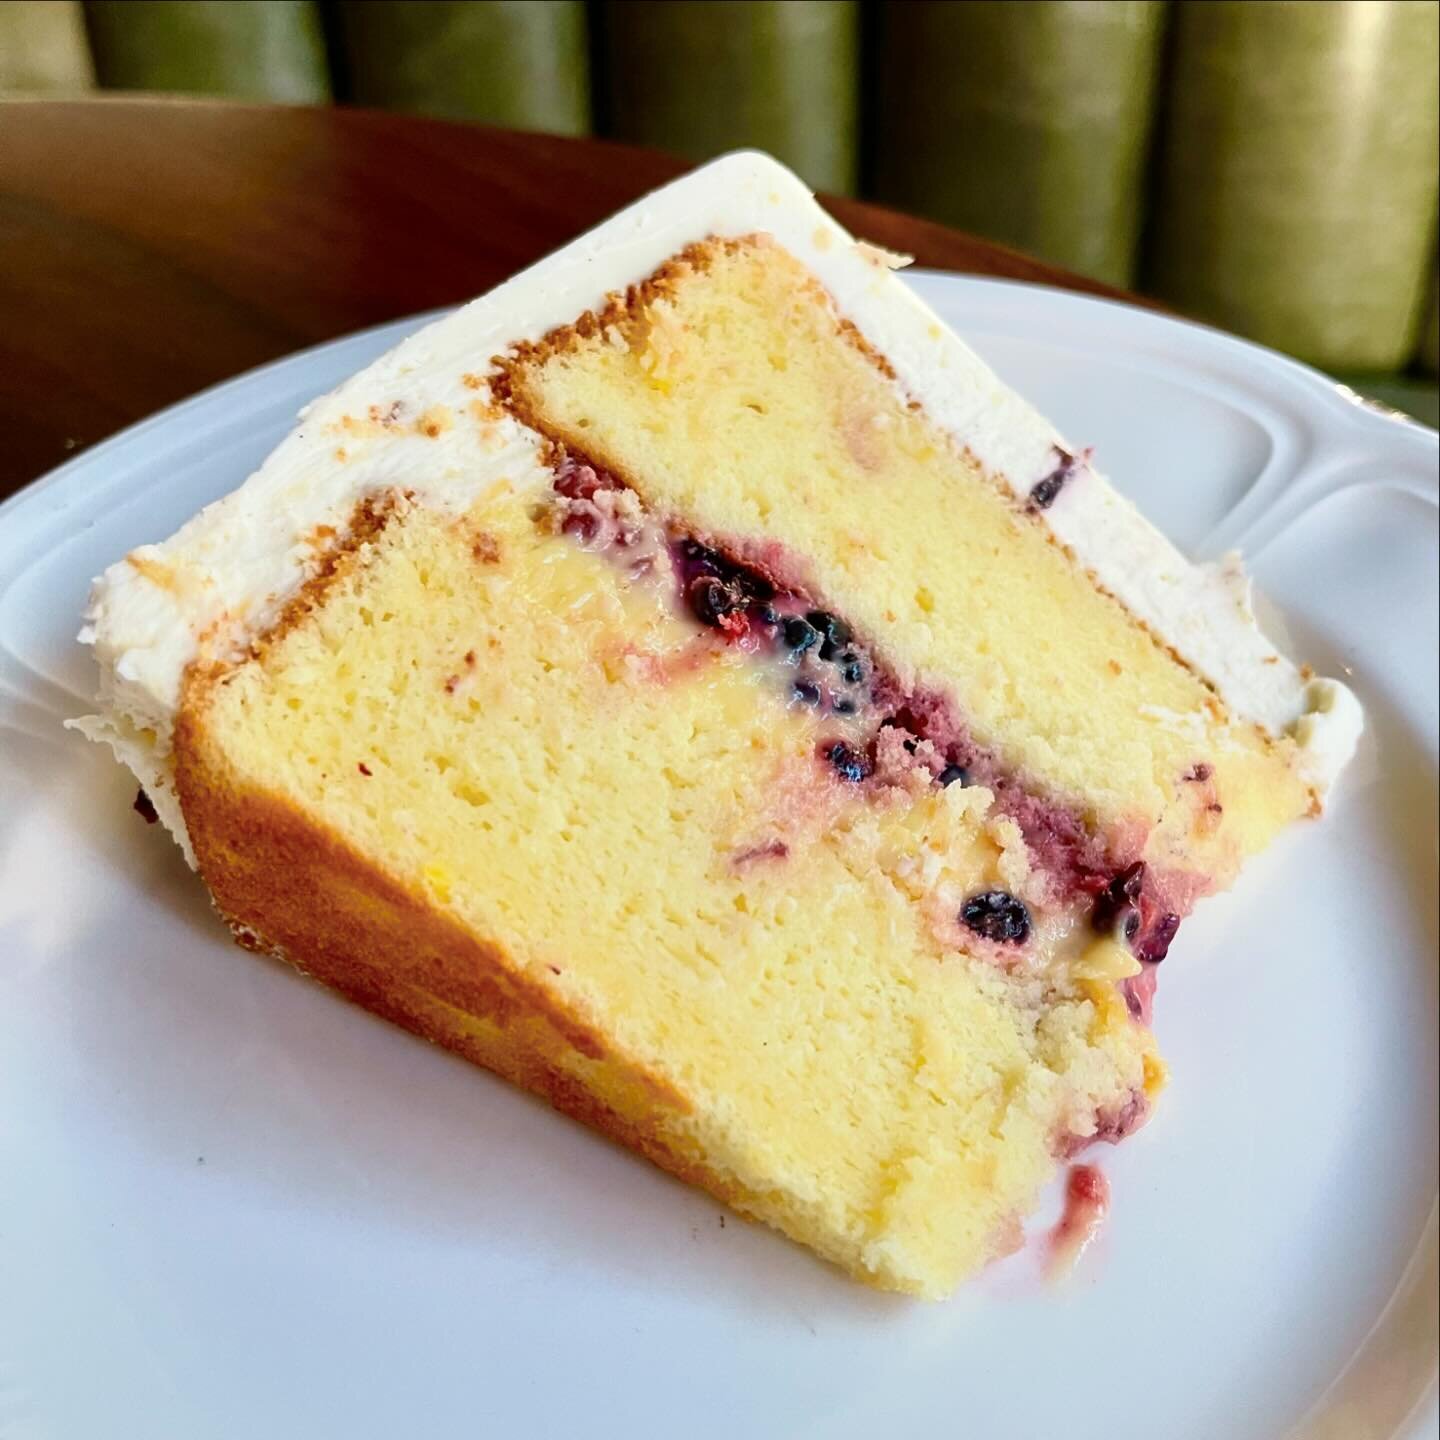 Save room for dessert!!! New 🍋 LEMON CHIFFON CAKE from our baker @aulevainchicago with lemon curd, fresh berries and MASCARPONE BUTTERCREAM 🍰 

#mascarponebuttercream #lemonchiffoncake #chicagofoodandwine #chicagorestaurants #dessert